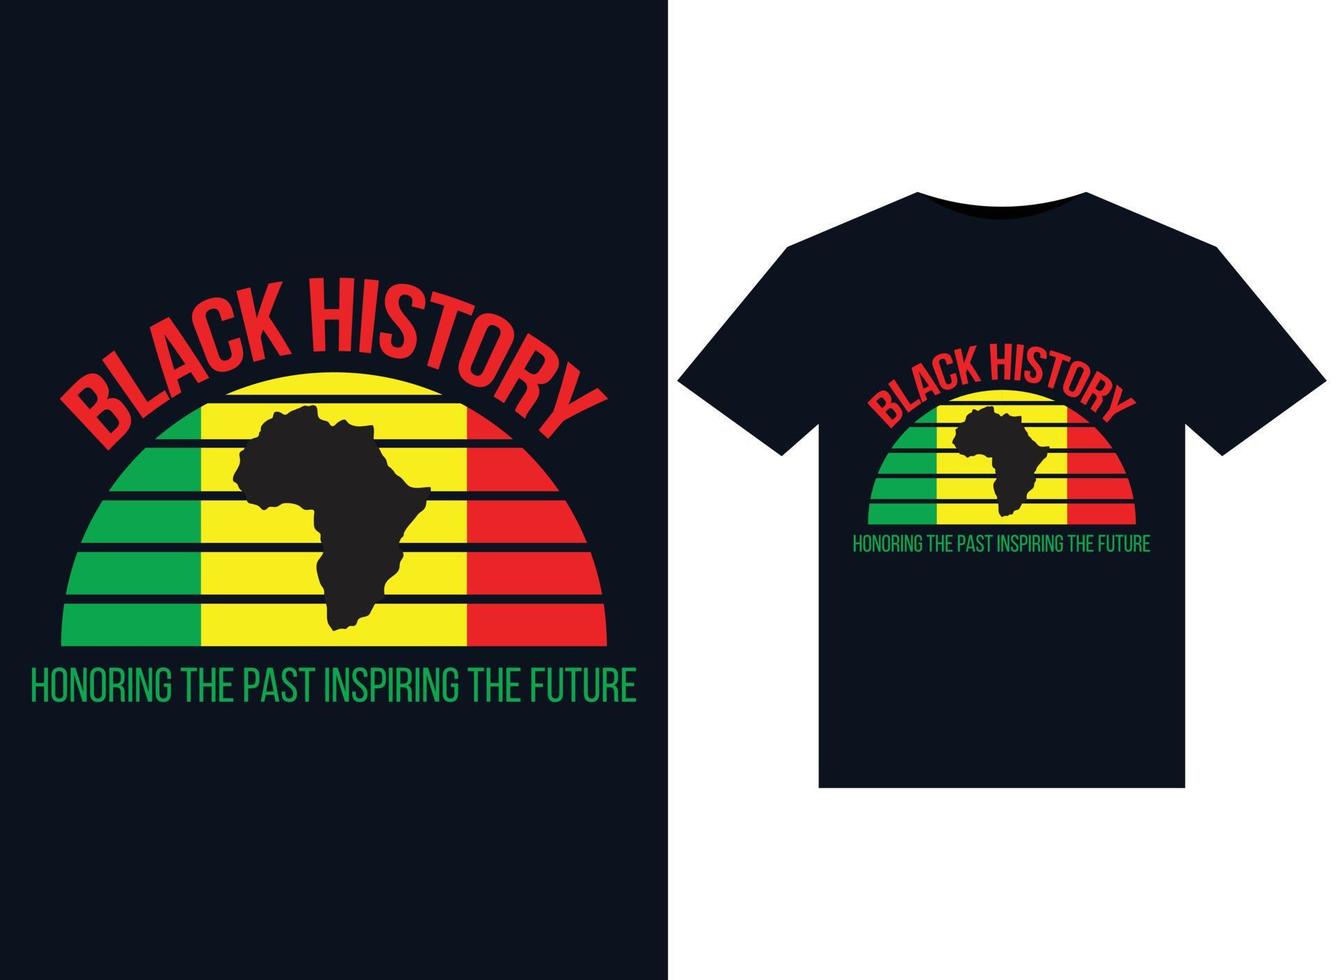 schwarze geschichte, die die vergangenheit ehrt und die zukunft inspiriert. illustrationen für druckfertige t-shirt-designs vektor